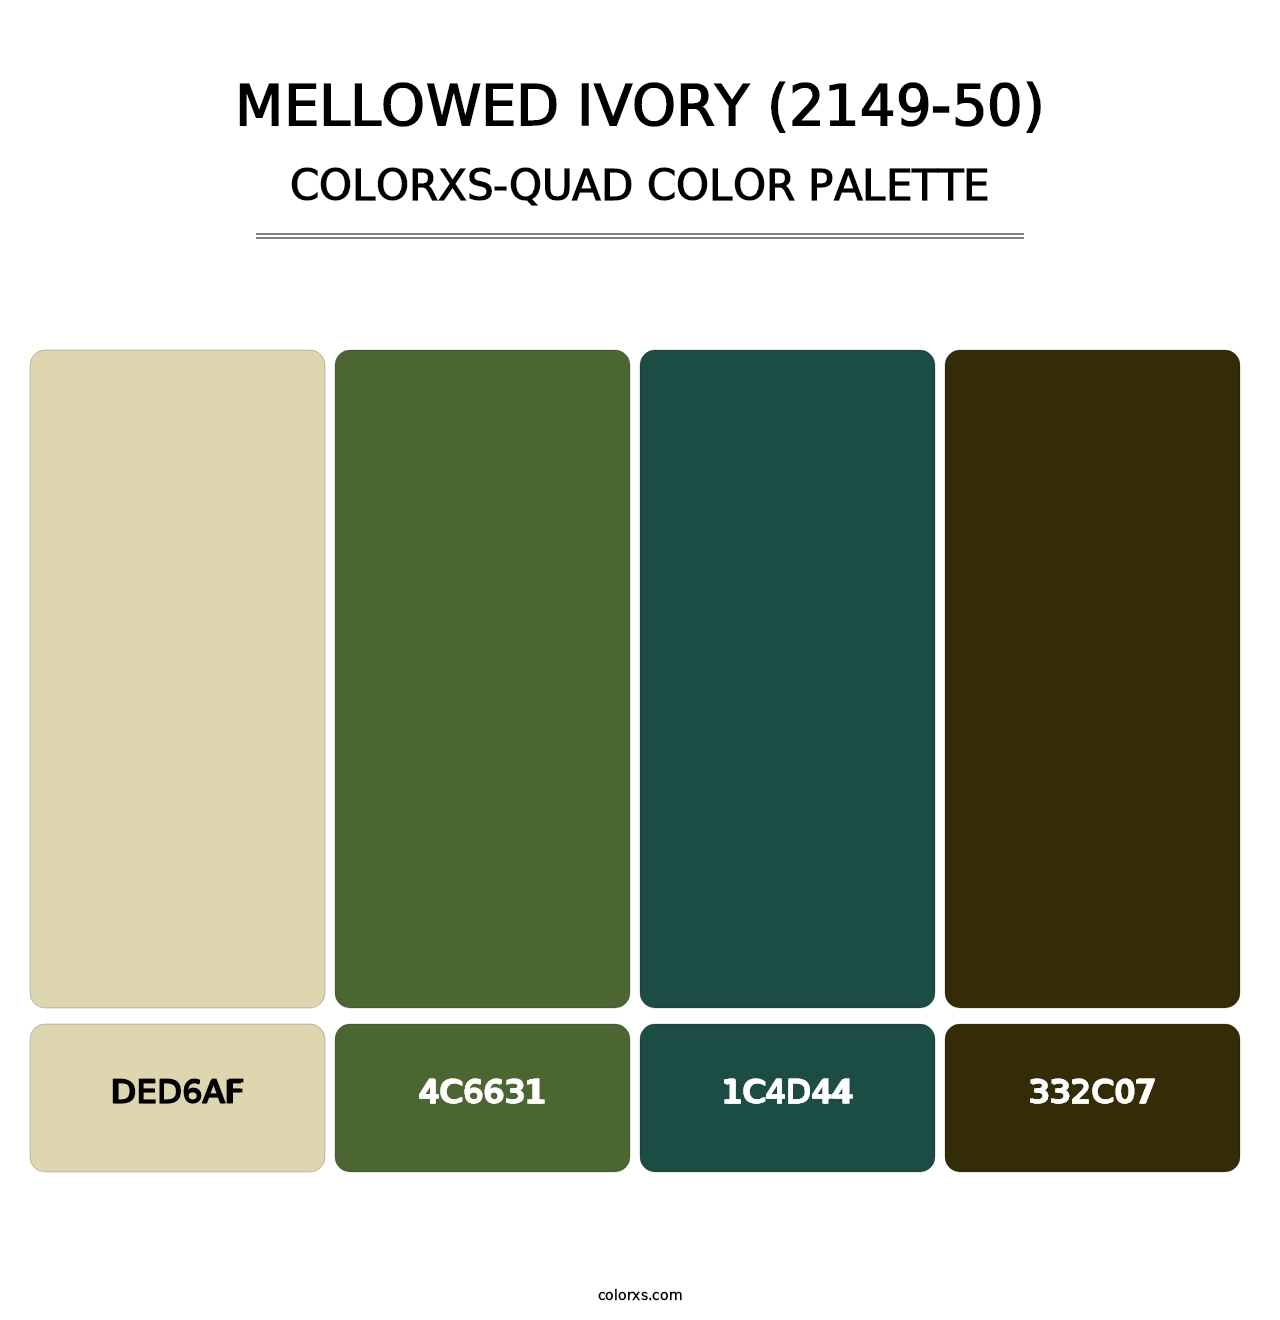 Mellowed Ivory (2149-50) - Colorxs Quad Palette